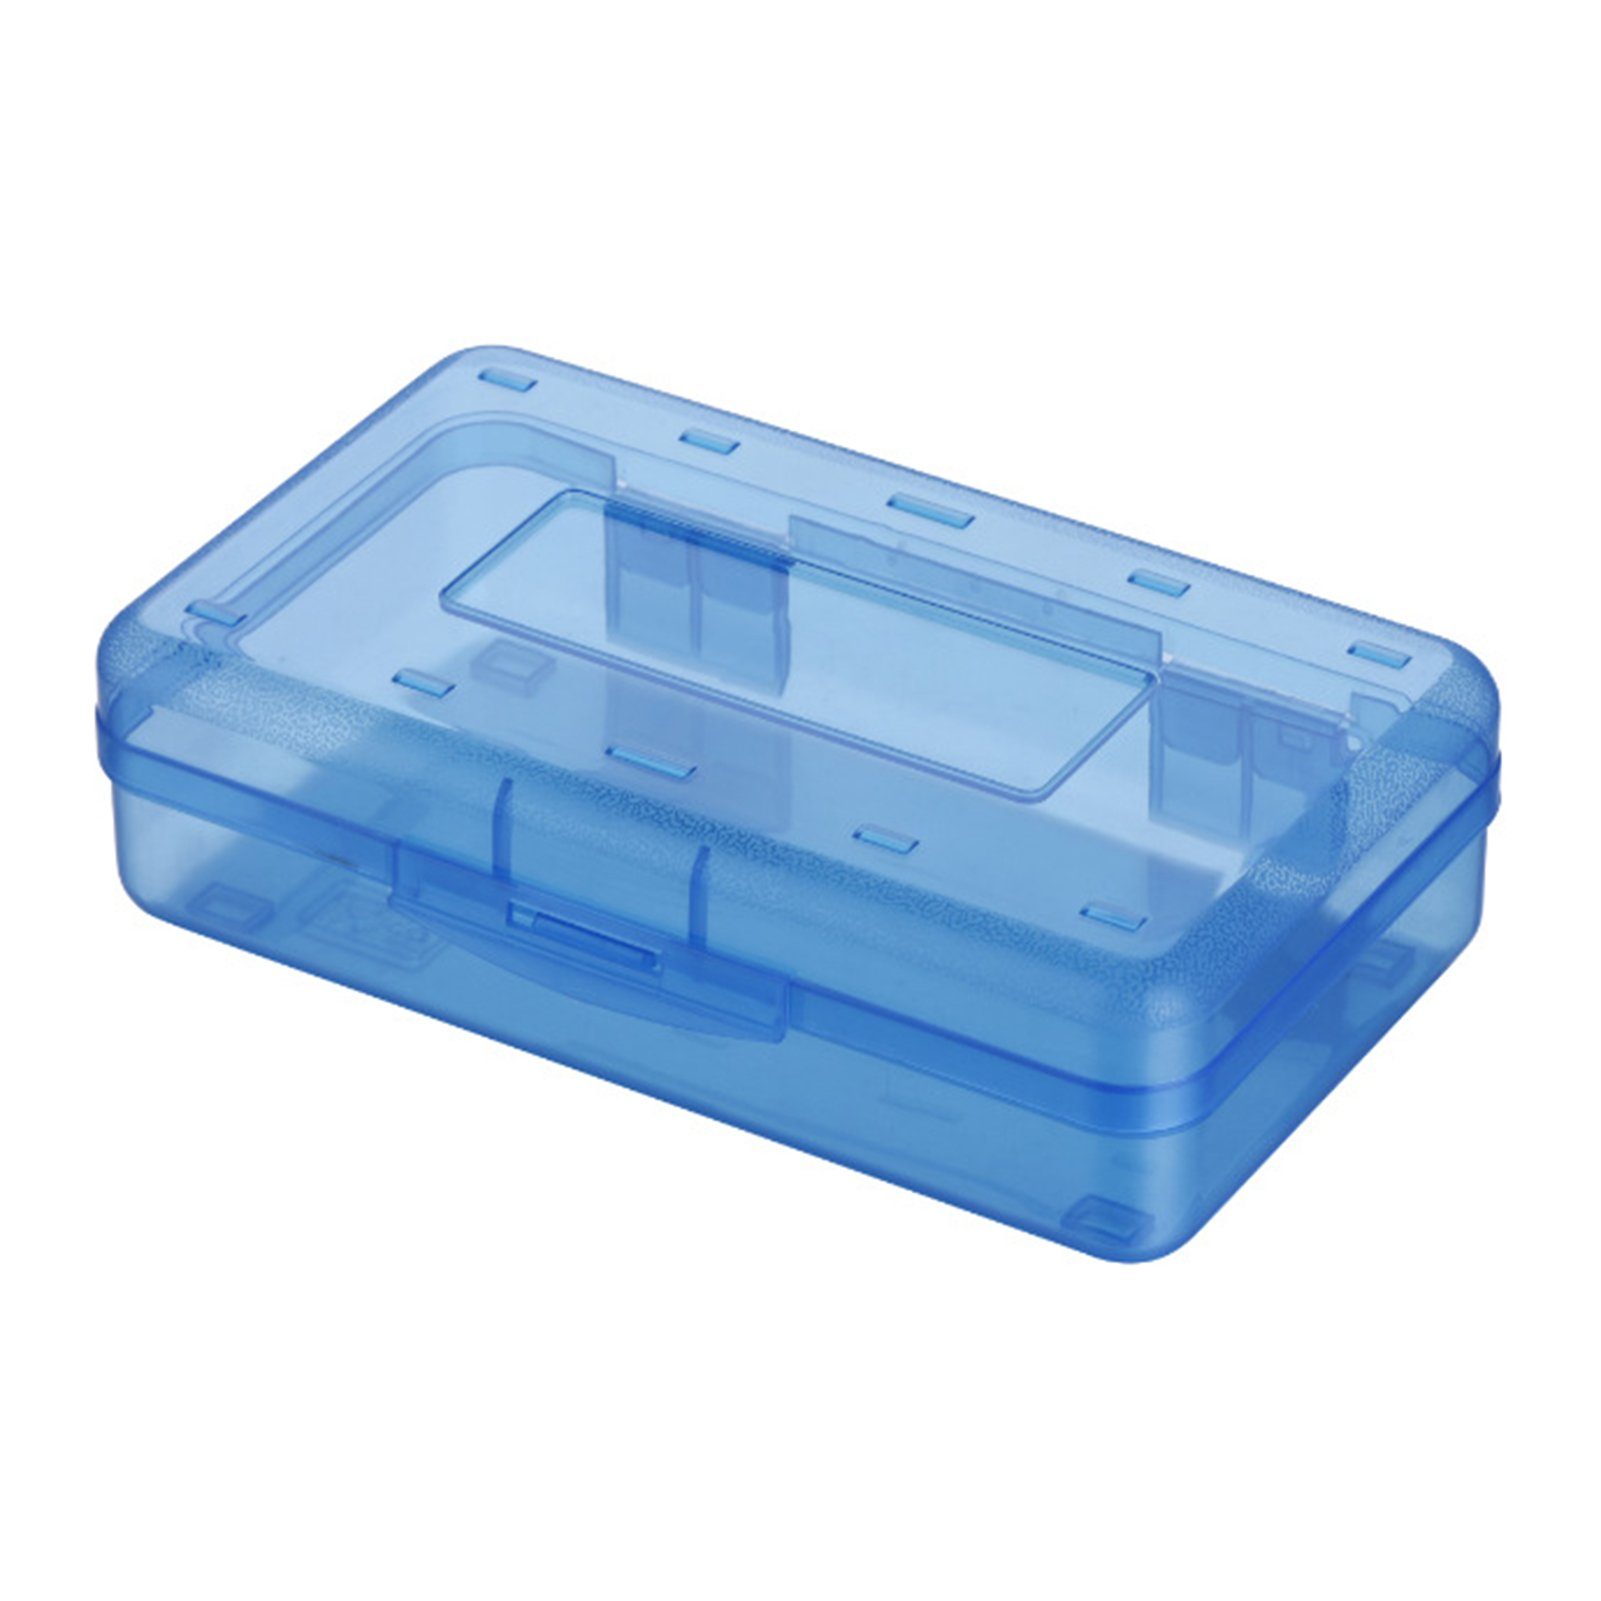 Blusmart blue Schöne Transparente/bunte Federtasche Tragbare Bleistiftbox, Federtasche, Bleistifttasche